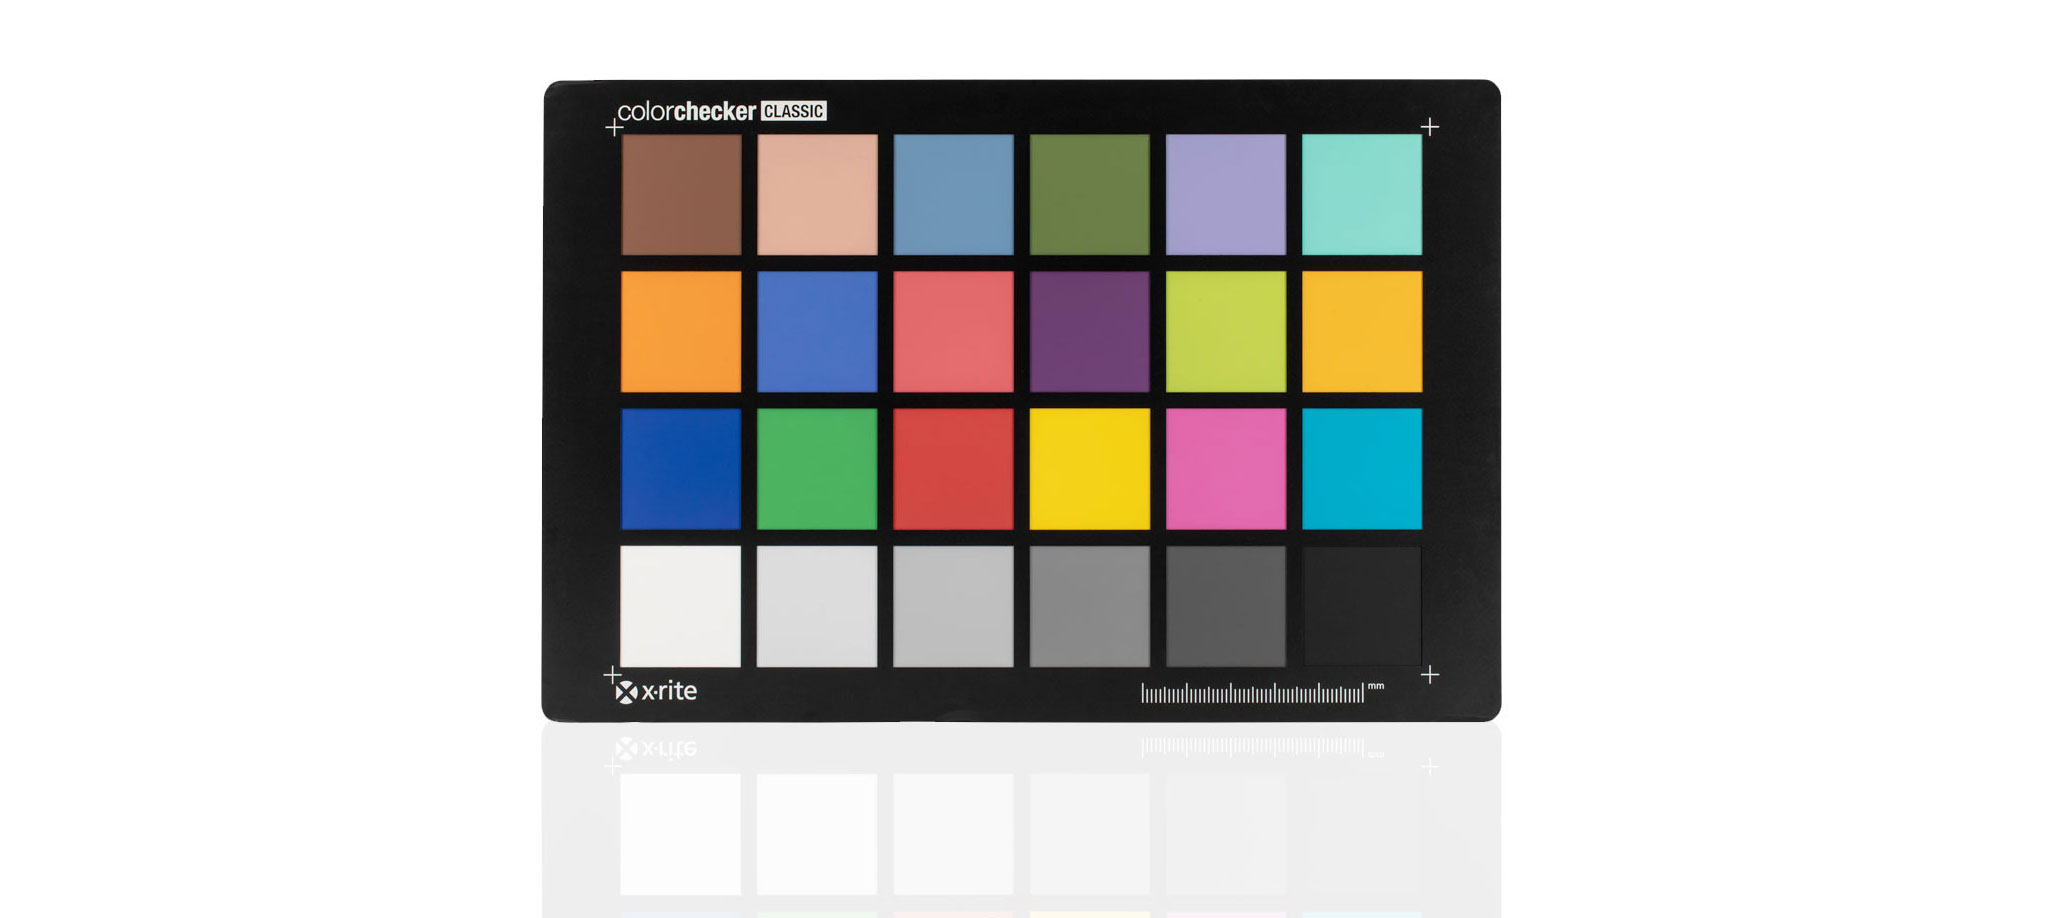 ColorChecker-Classic-Mega_00002.jpg